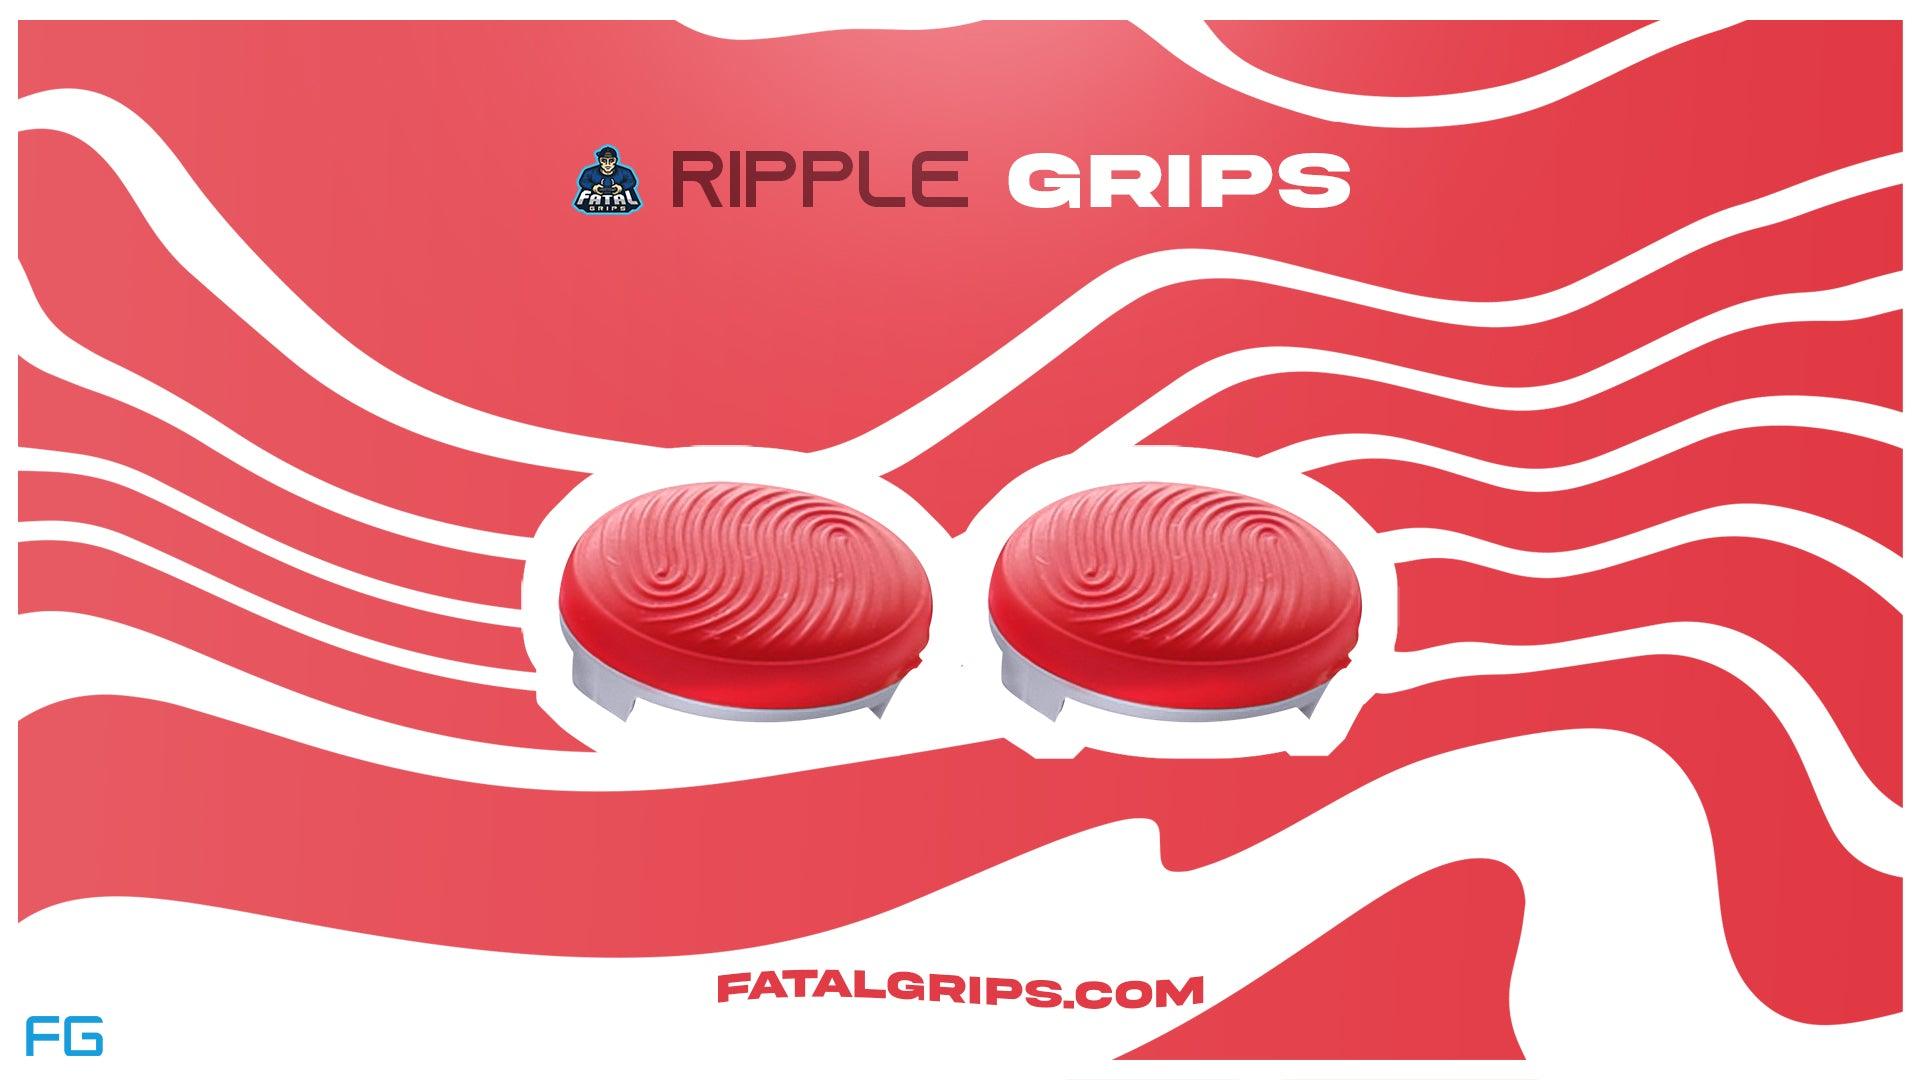 Ripple Grips - Fatal Grips